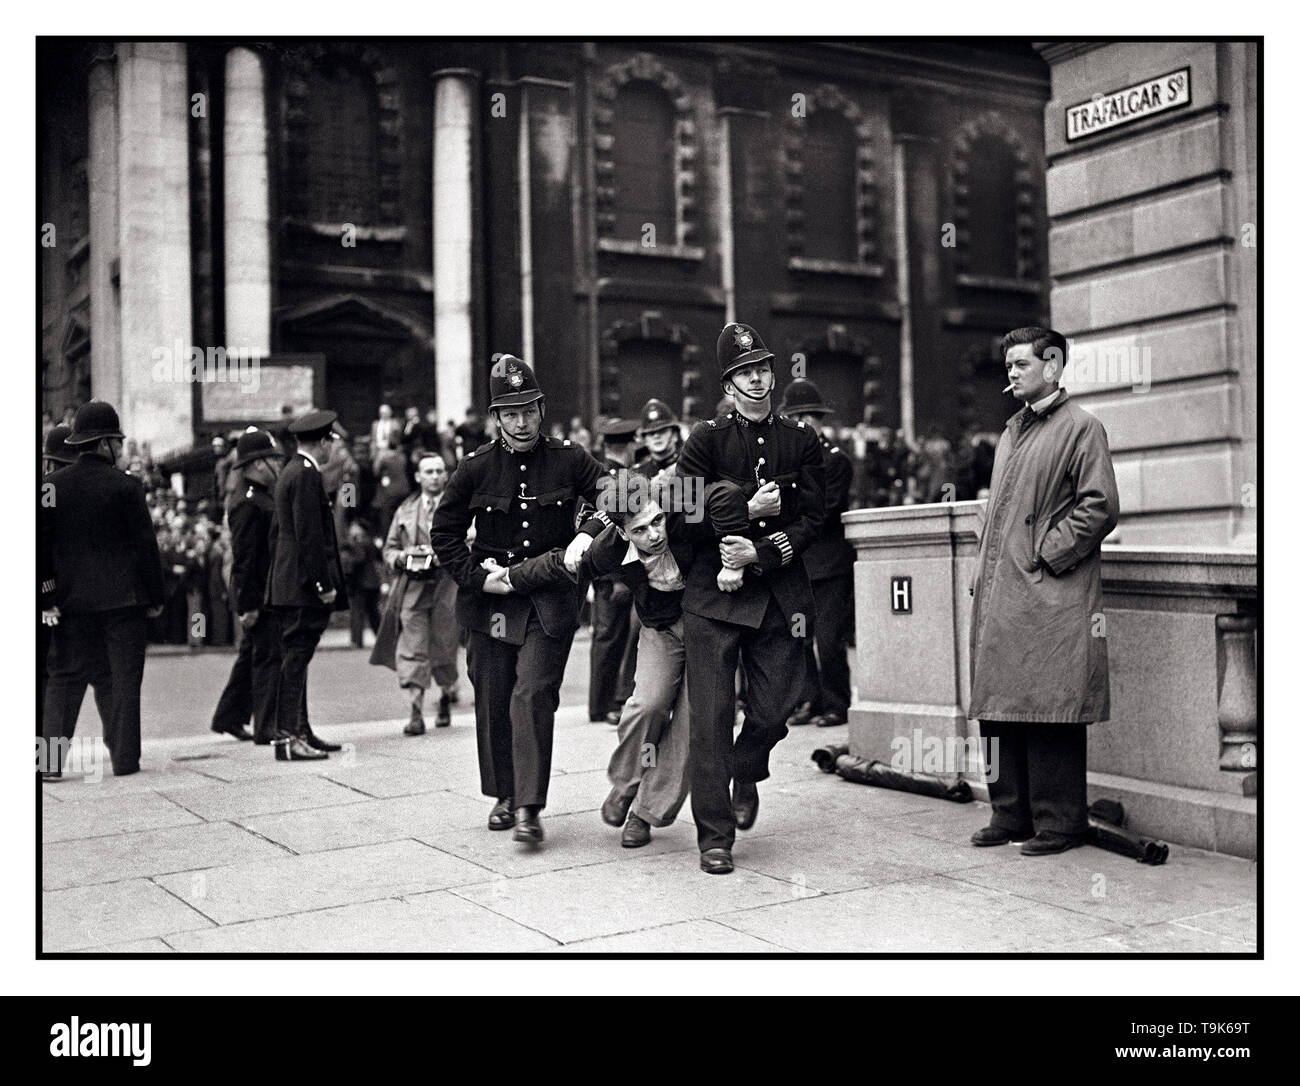 Vintage B&W actualités image d'ouverture aux prises avec la police, l'Union britannique des fascistes de Kentish Town, dirigé par Sir Oswald Mosley parade et mars à Londres lors des élections locales Dimanche 4 juillet 1937, Trafalgar Square London UK Banque D'Images